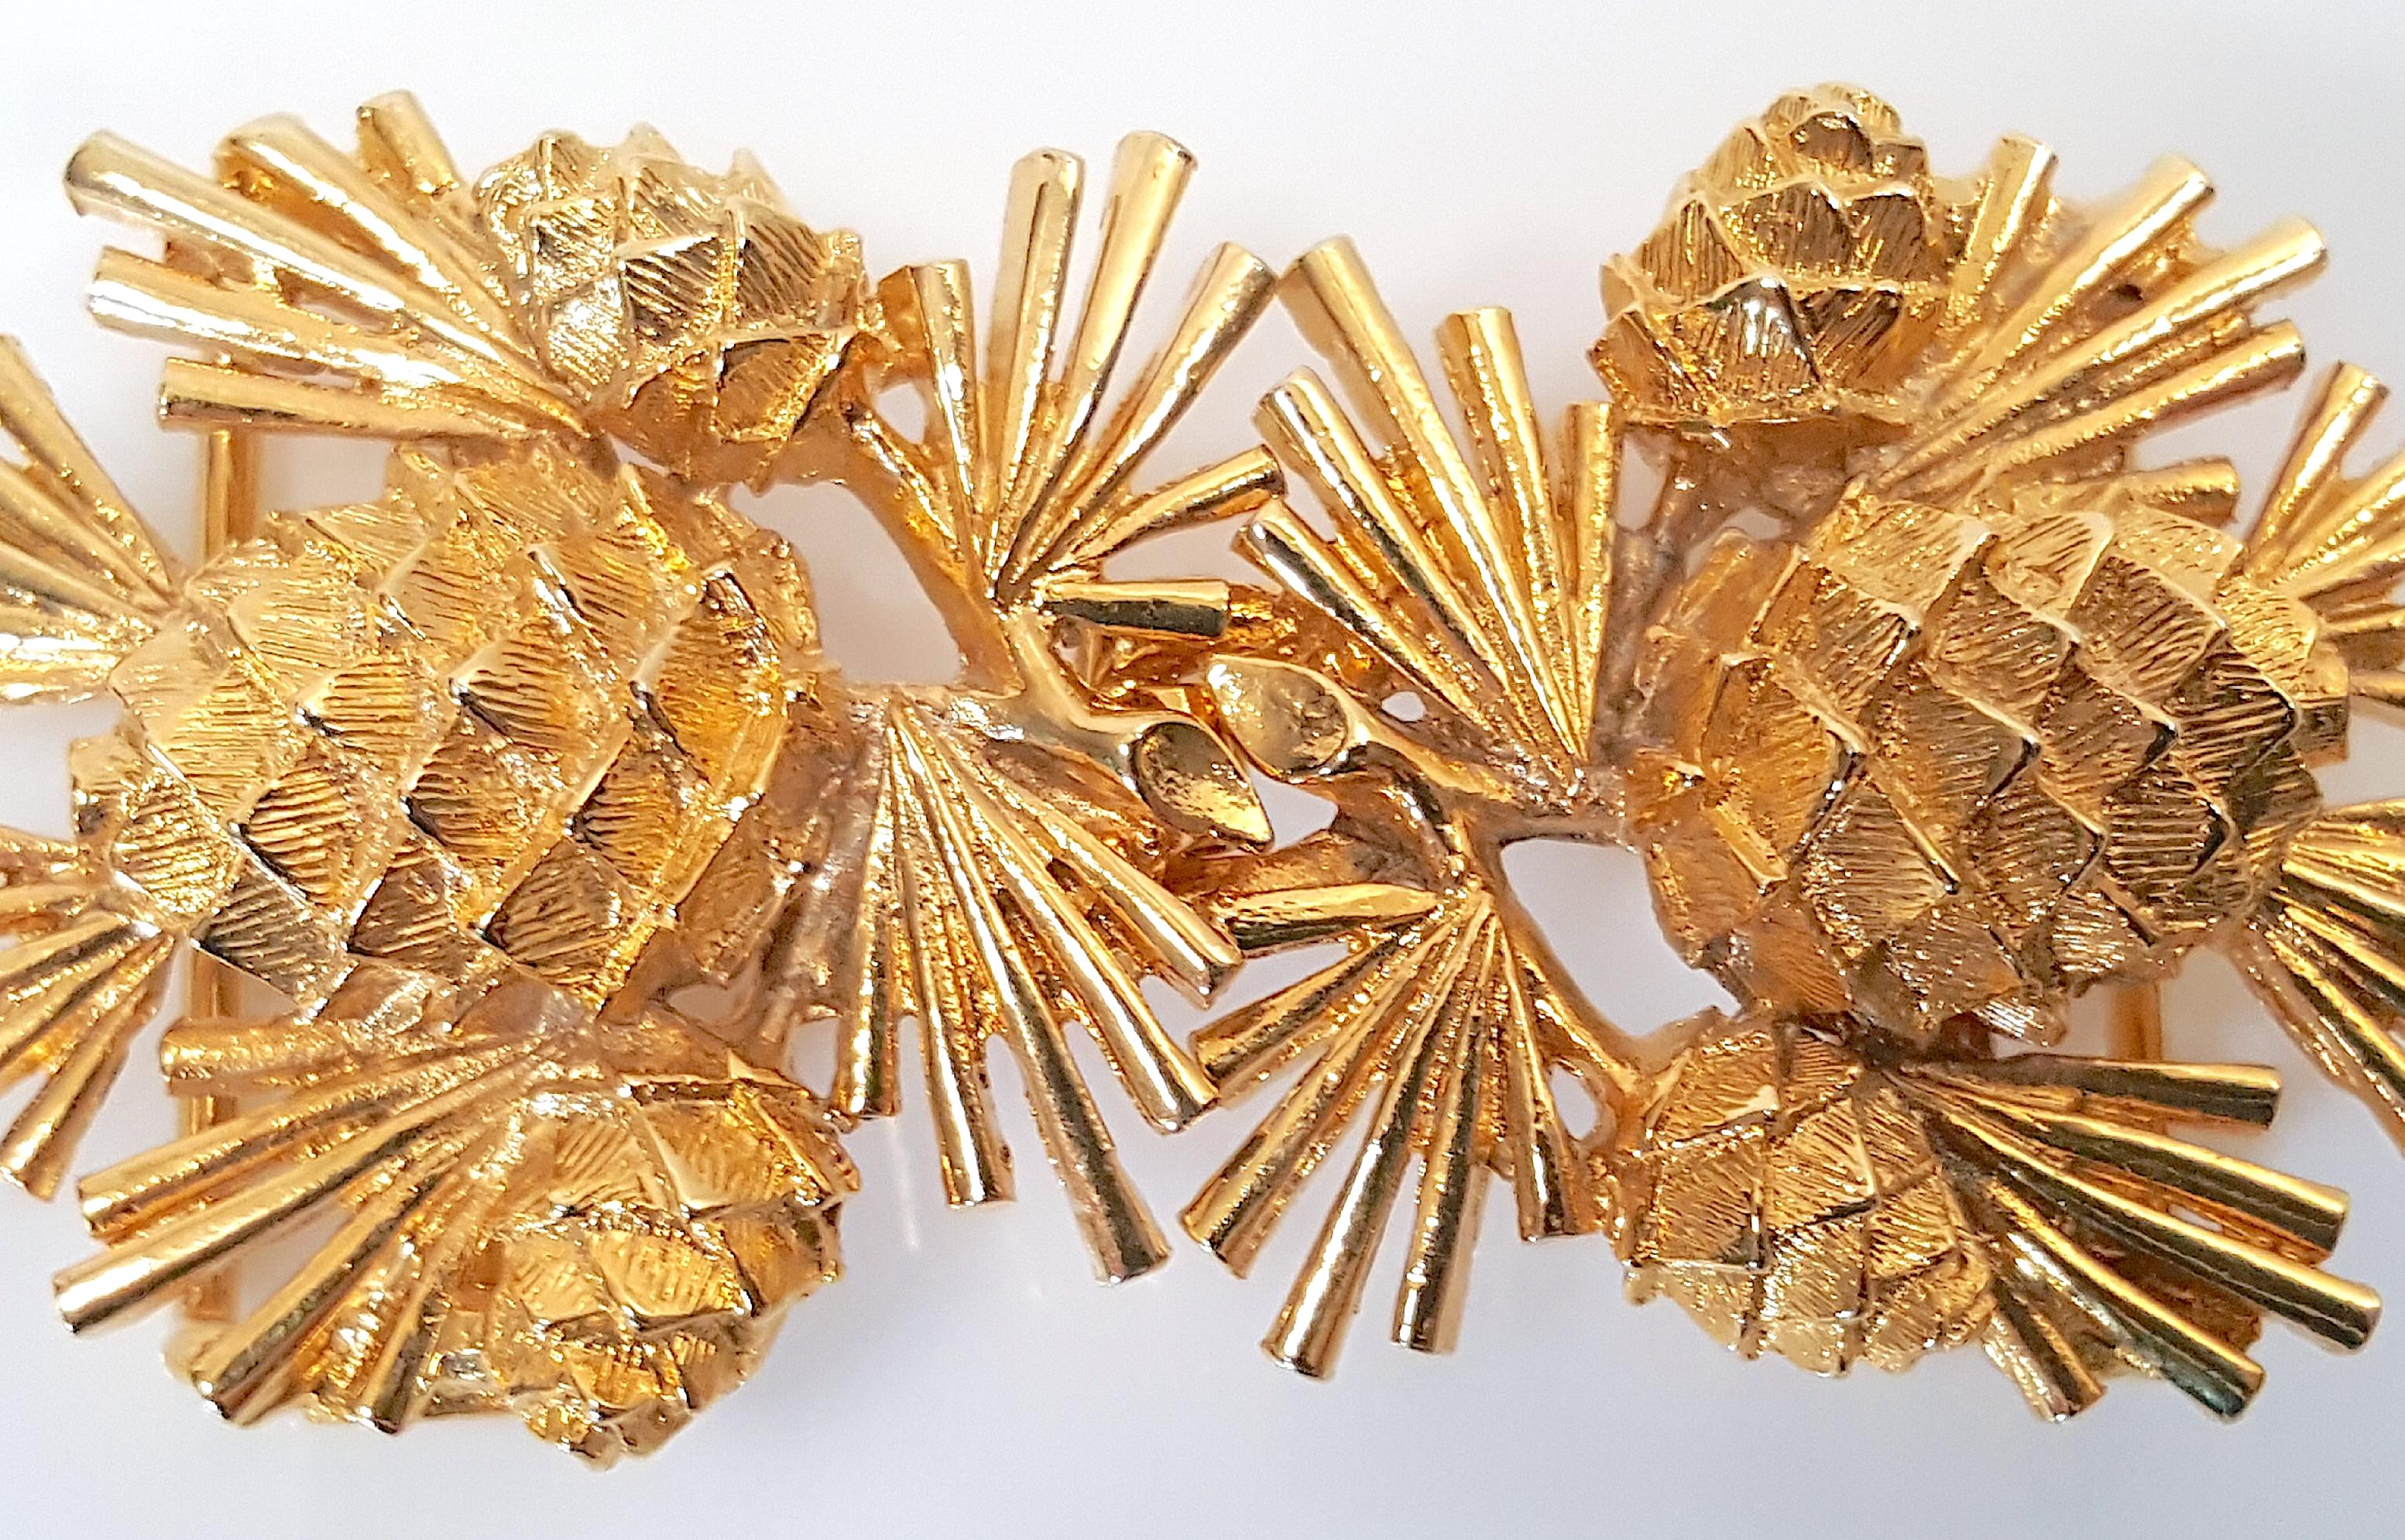 Cette boucle de ceinture ou pendentif convertible en deux parties en métal doré texturé curviligne représentant des pommes de pin et des gerbes d'aiguilles a été conçue par Mimi di N en 1981, comme l'indique le cachet signé et daté apposé sur chaque